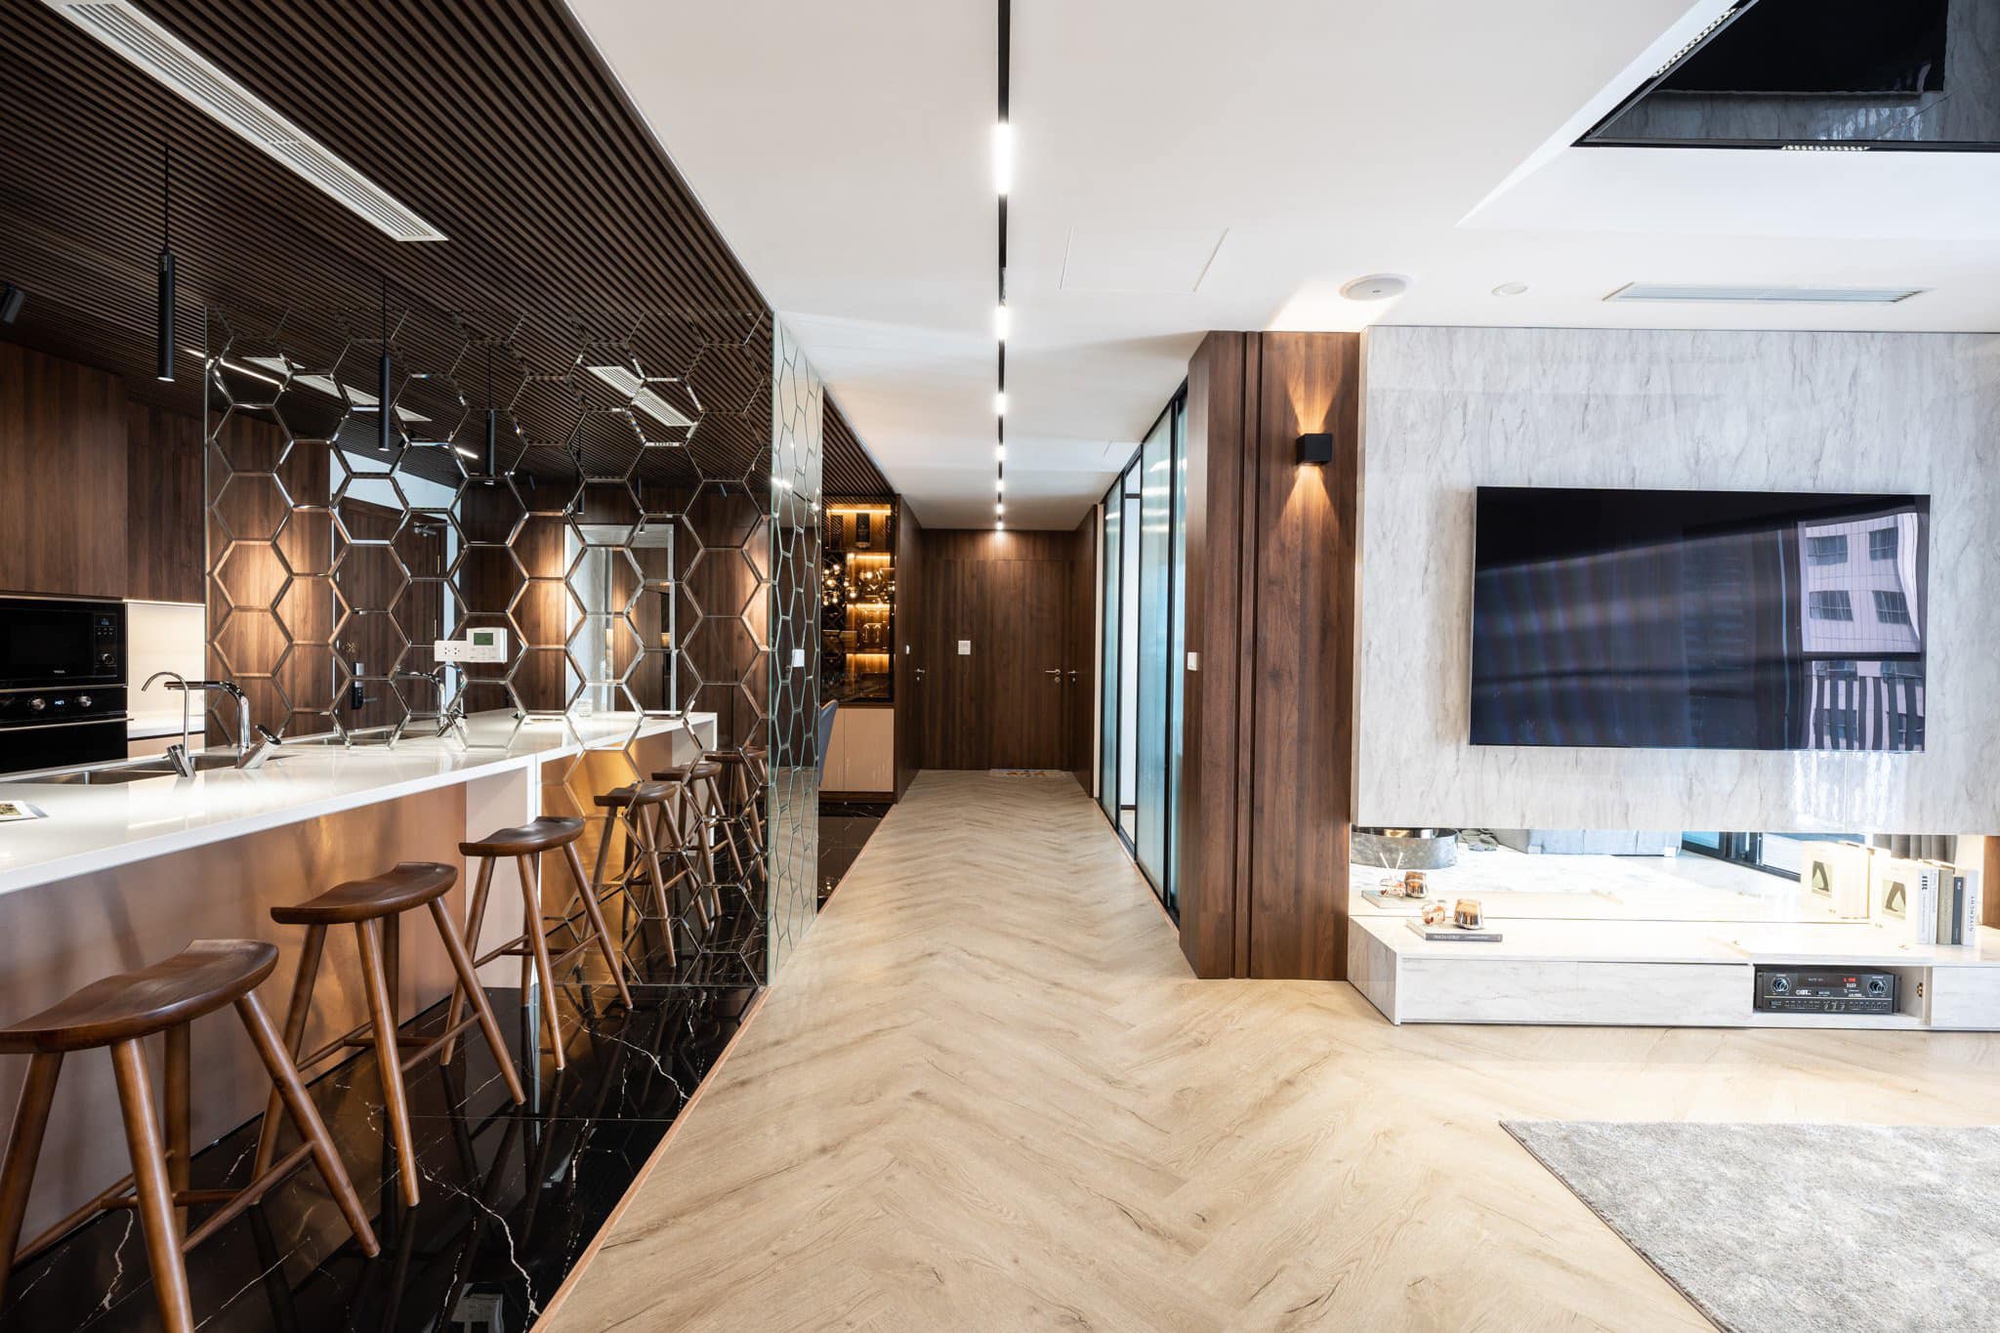 Căn hộ 160m² với 3 phòng ngủ theo phong cách luxury hết chi phí 3 tỷ của cặp vợ chồng ở Hà Nội - Ảnh 7.